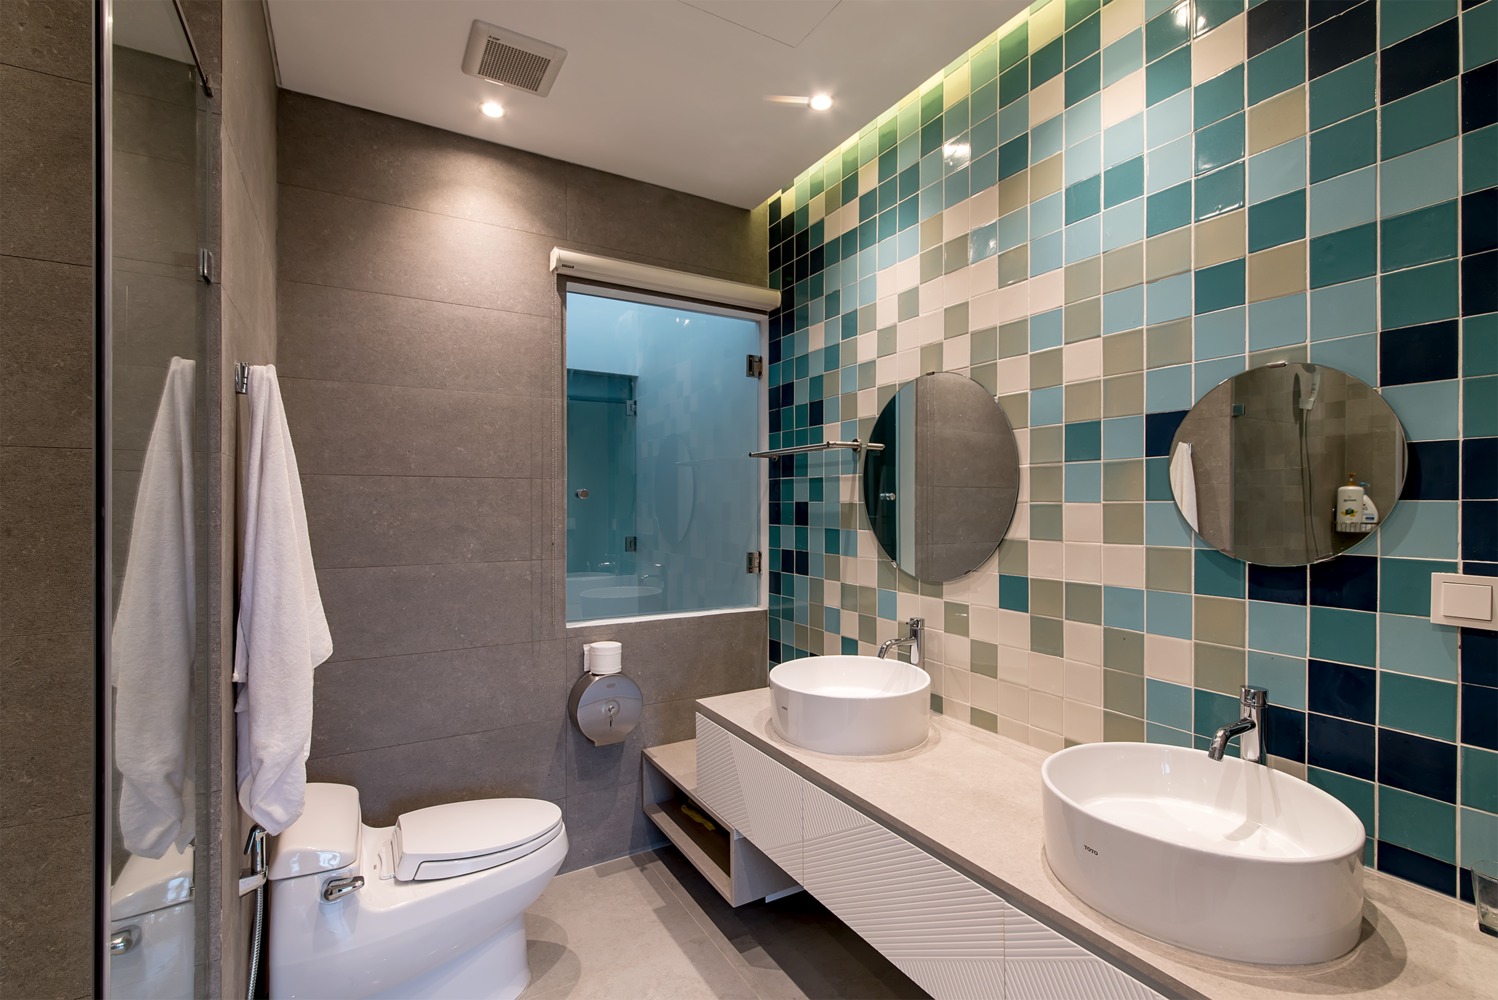 Hình ảnh phòng vệ sinh nổi bật với tường ốp gạch men, bồn rửa đôi, bộ đôi gương soi gắn tường